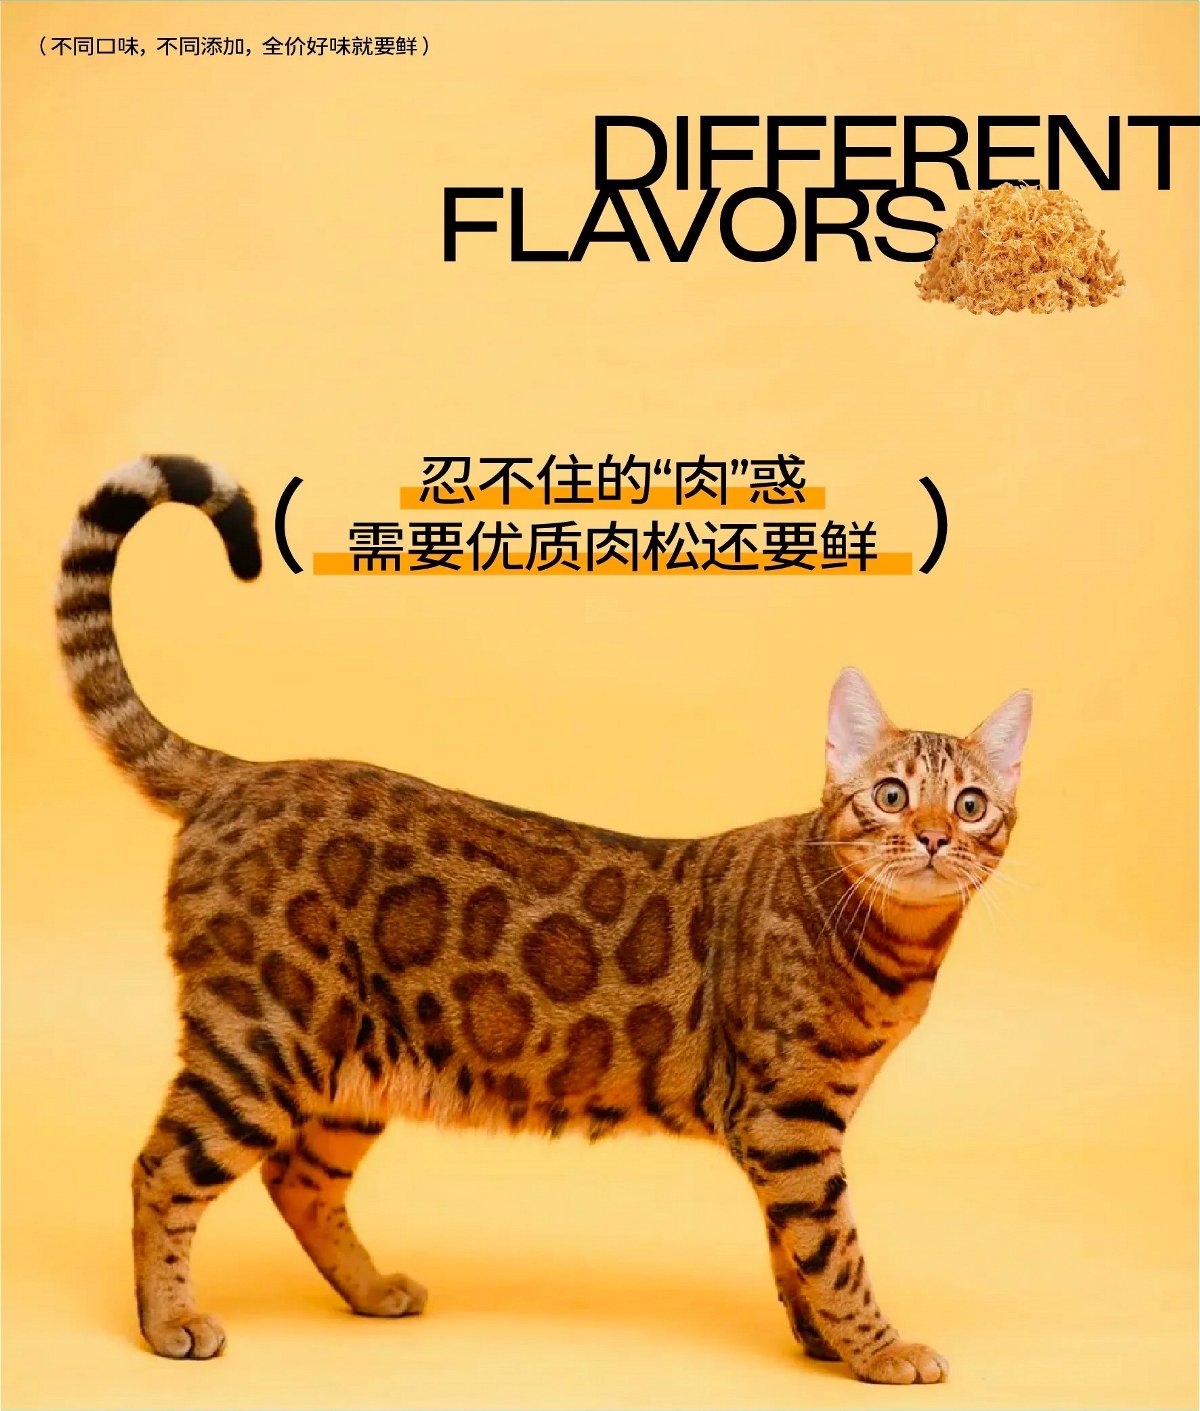 猫粮包装设计 宠物包装设计 宠物VI设计 宠物品牌设计